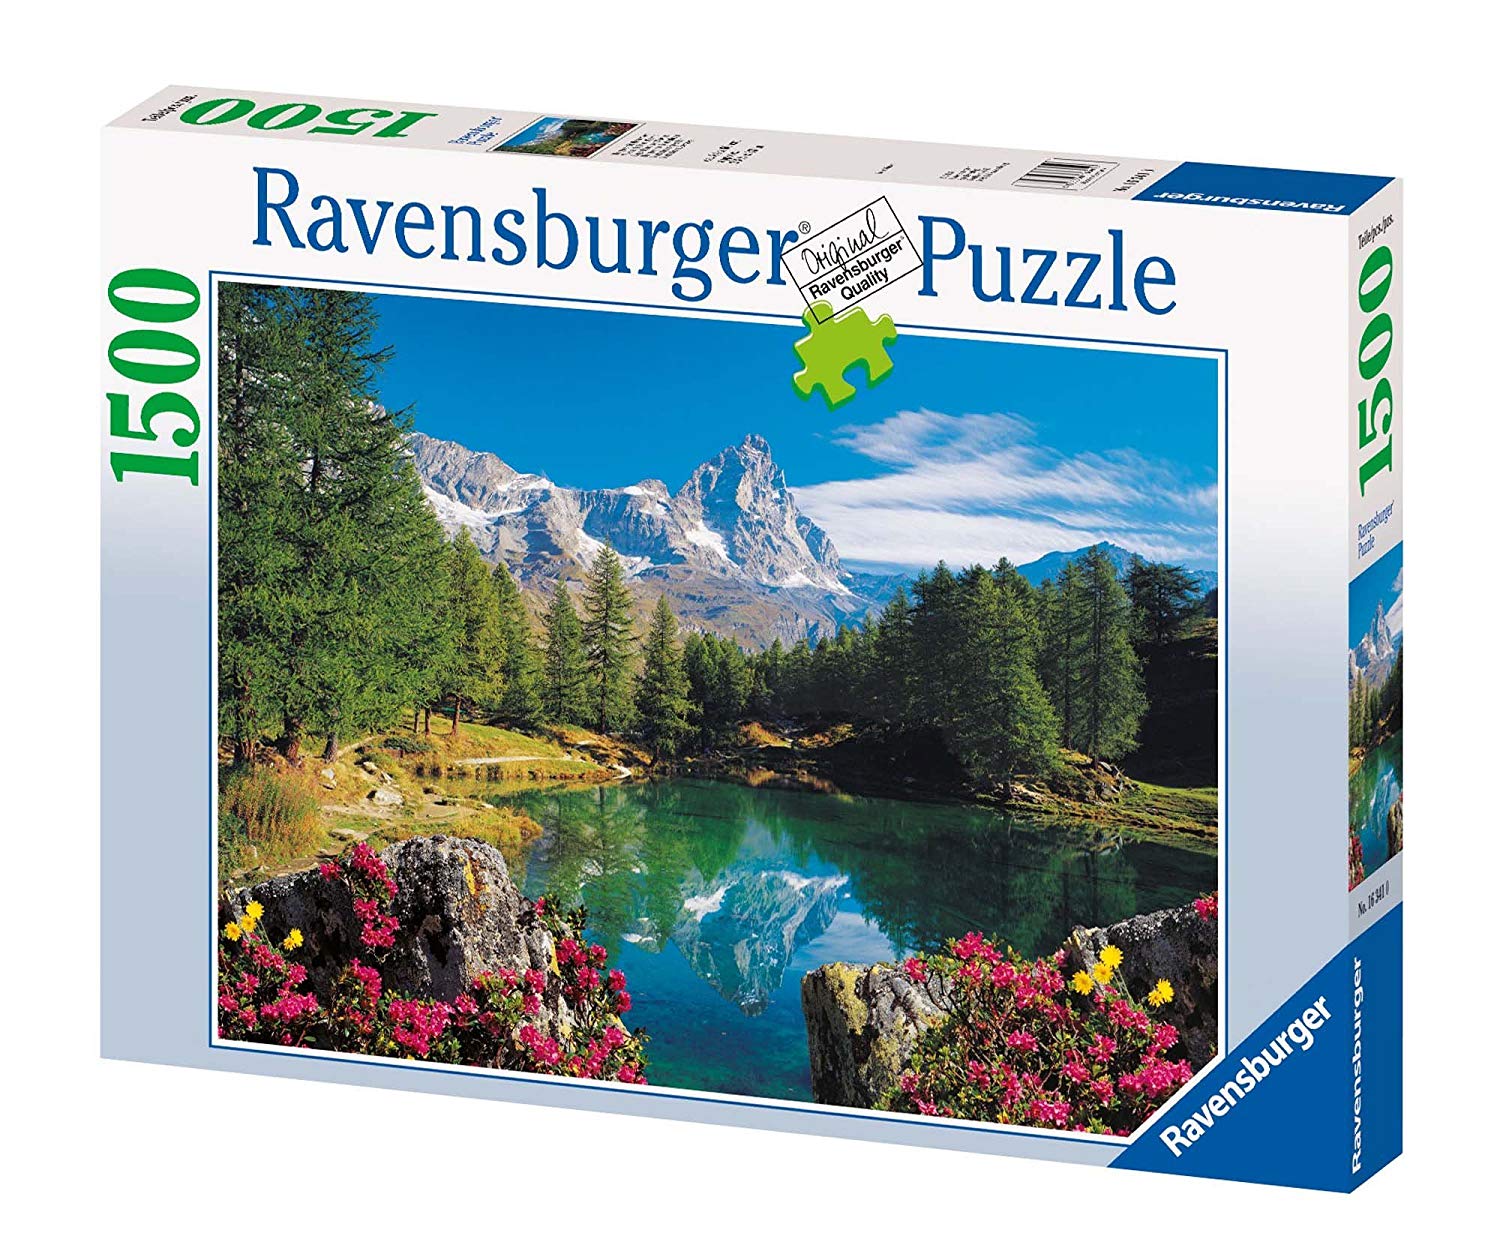 Ravensburger Matterhorn Splendor Piece Jigsaw Puzzle